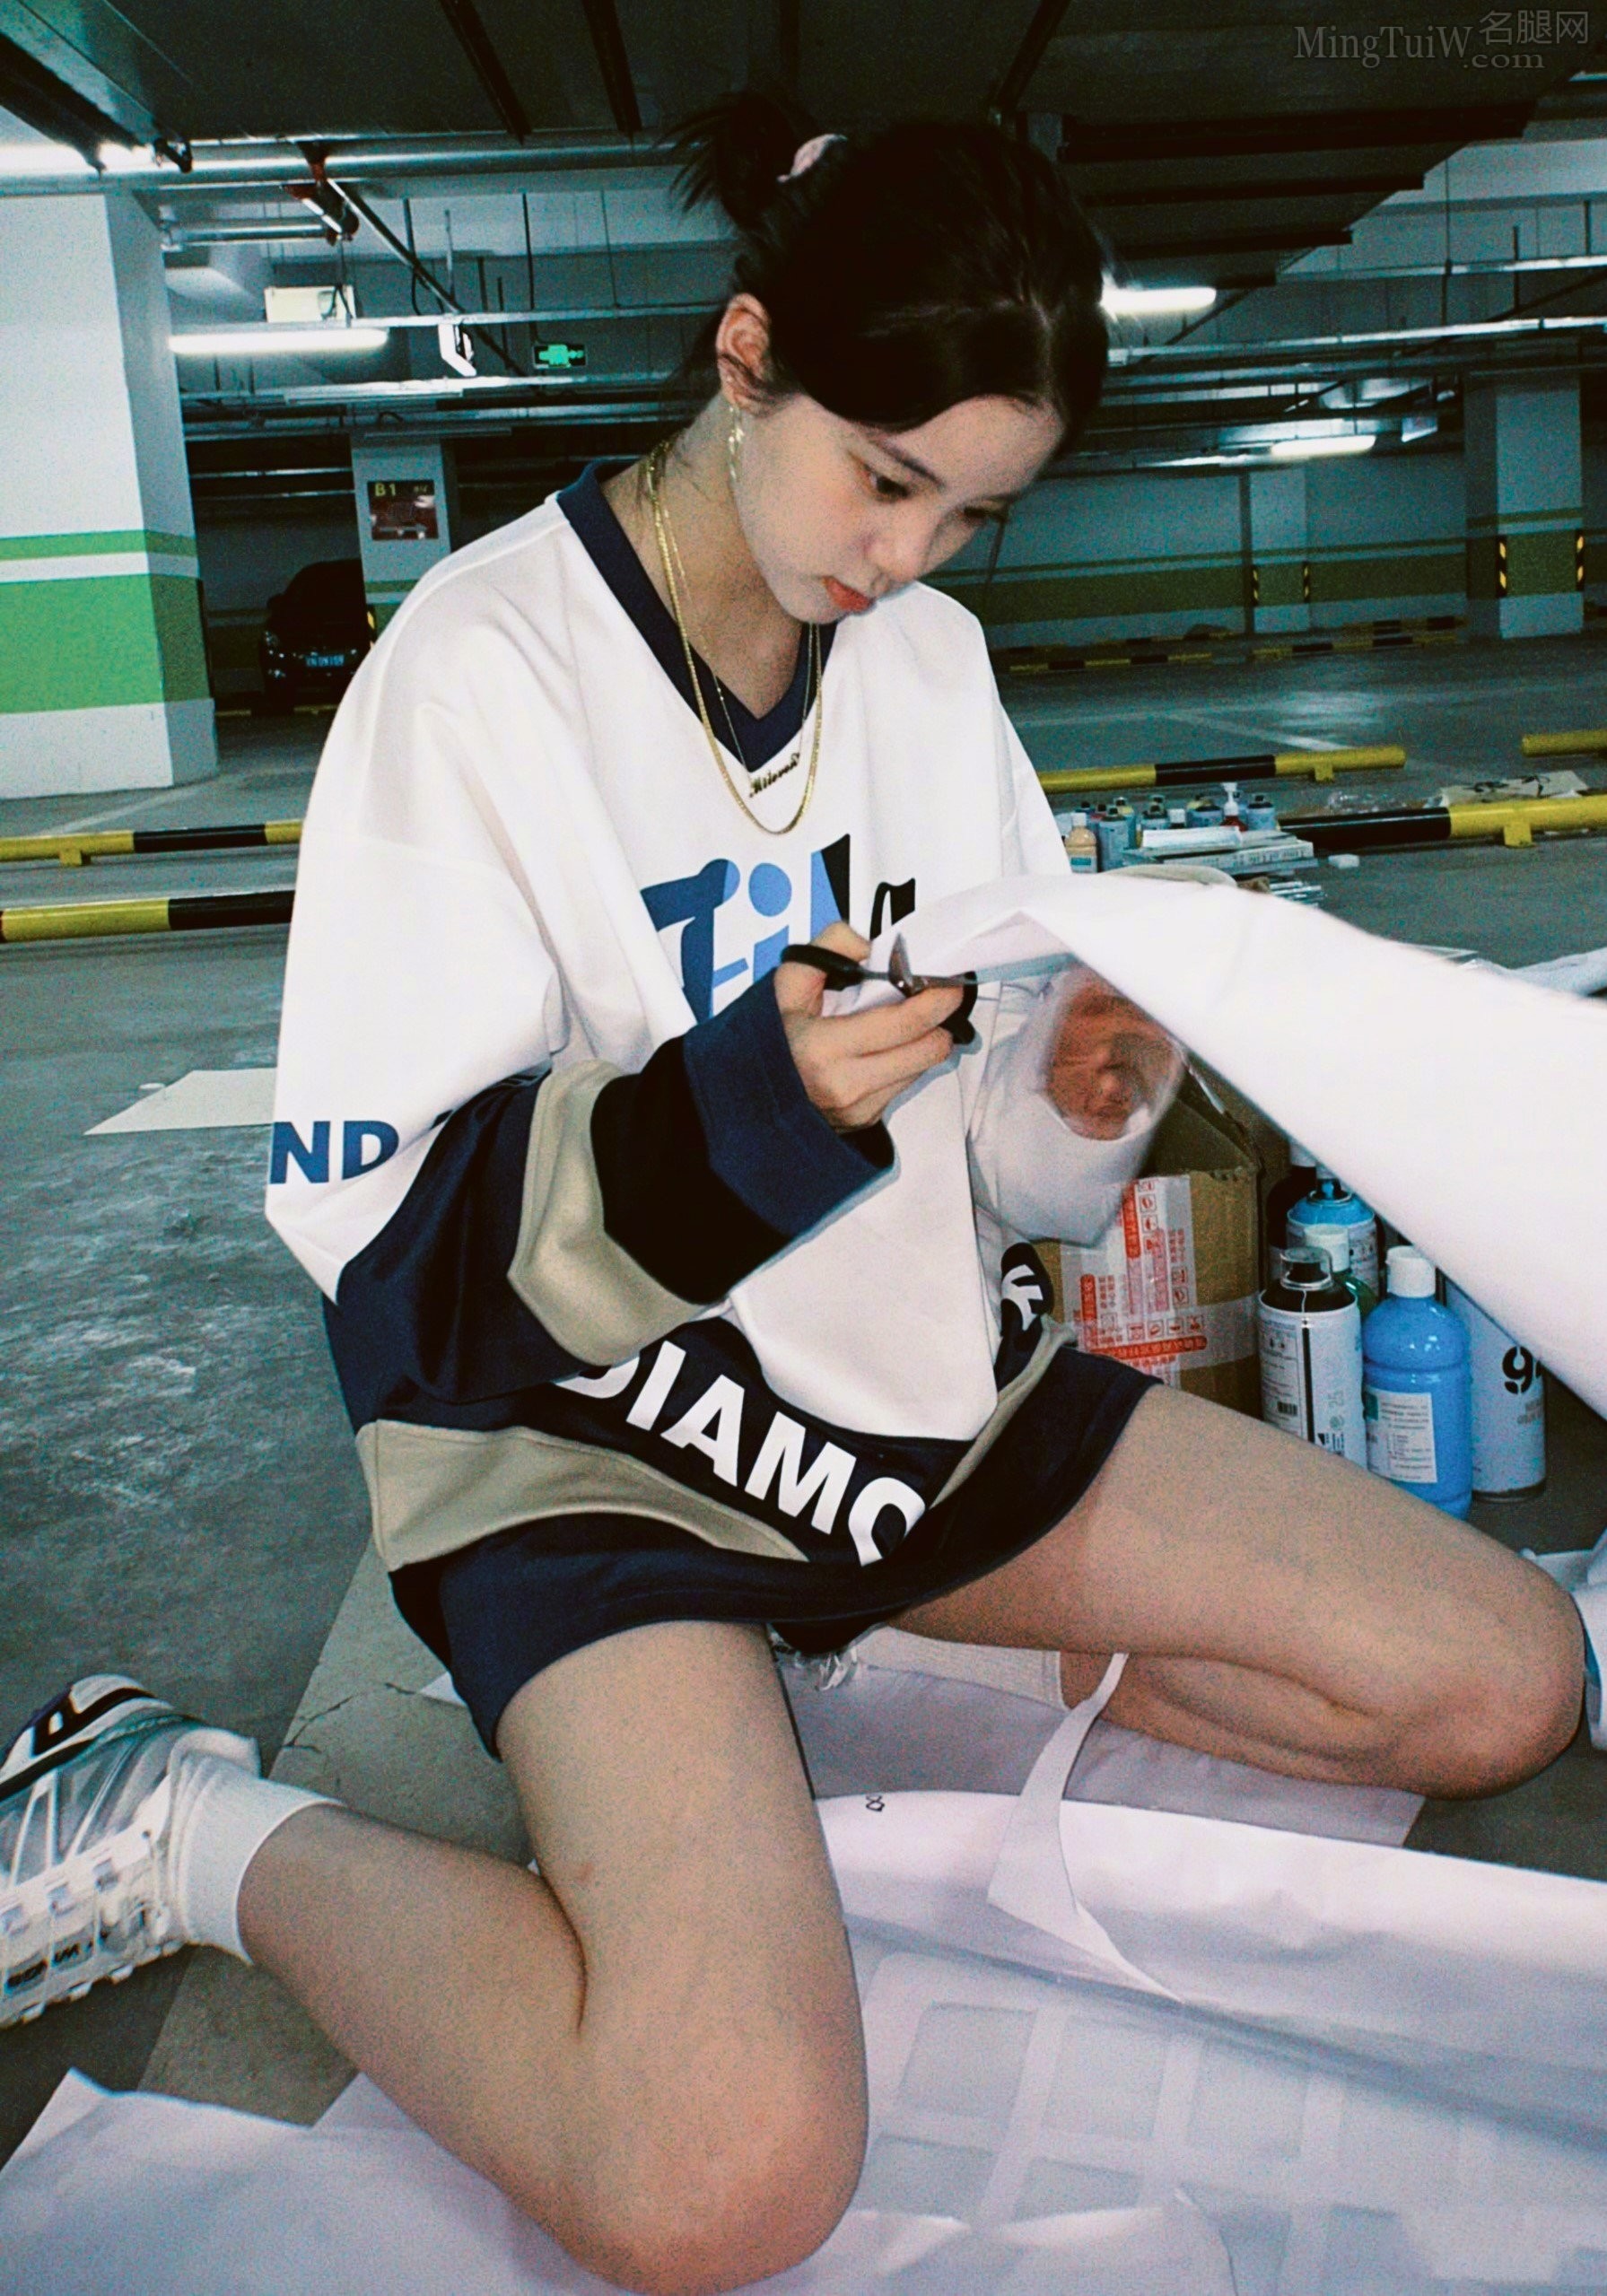 欧阳娜娜白腿写真从校园到废弃工厂（10/11） - 图片 - 名腿网